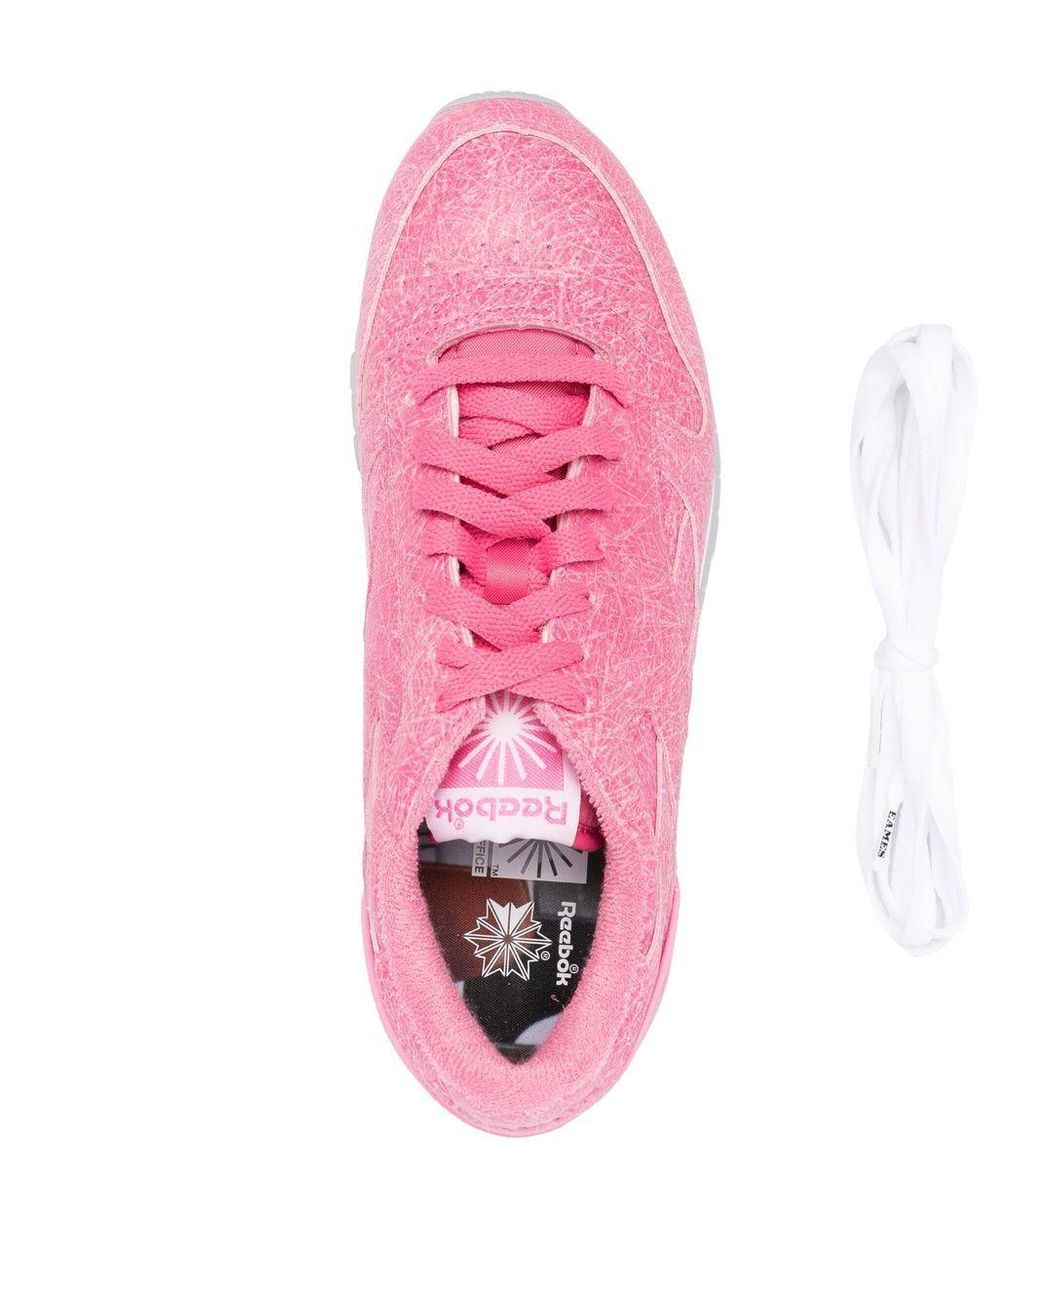 Reebok X Eames Fiberglass Leather Sneakers in Pink | Lyst